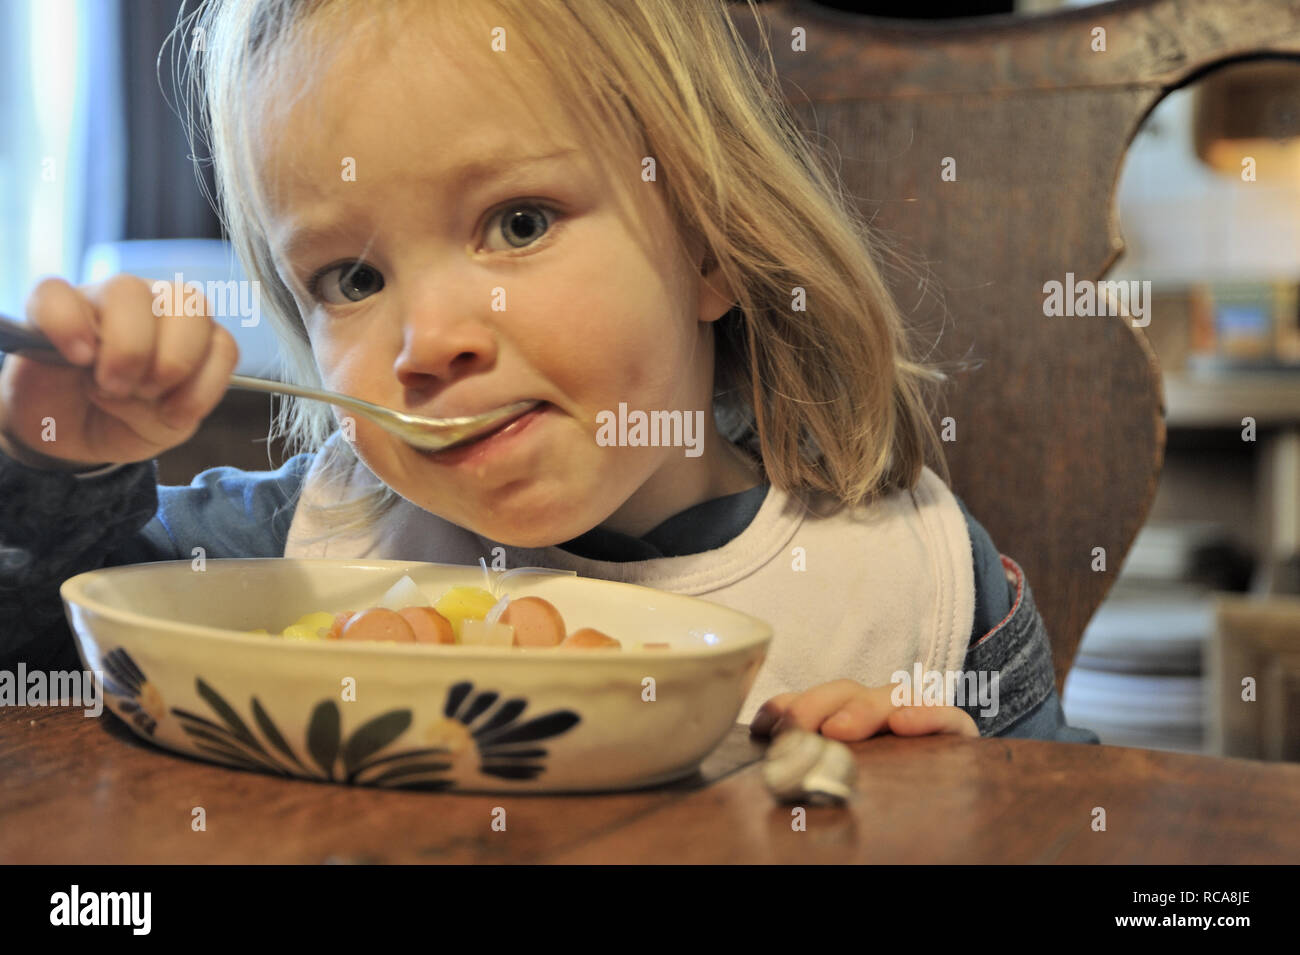 kleines Mädchen beim Essen, 2 Jahre alt | little girl eating, two years old Stock Photo